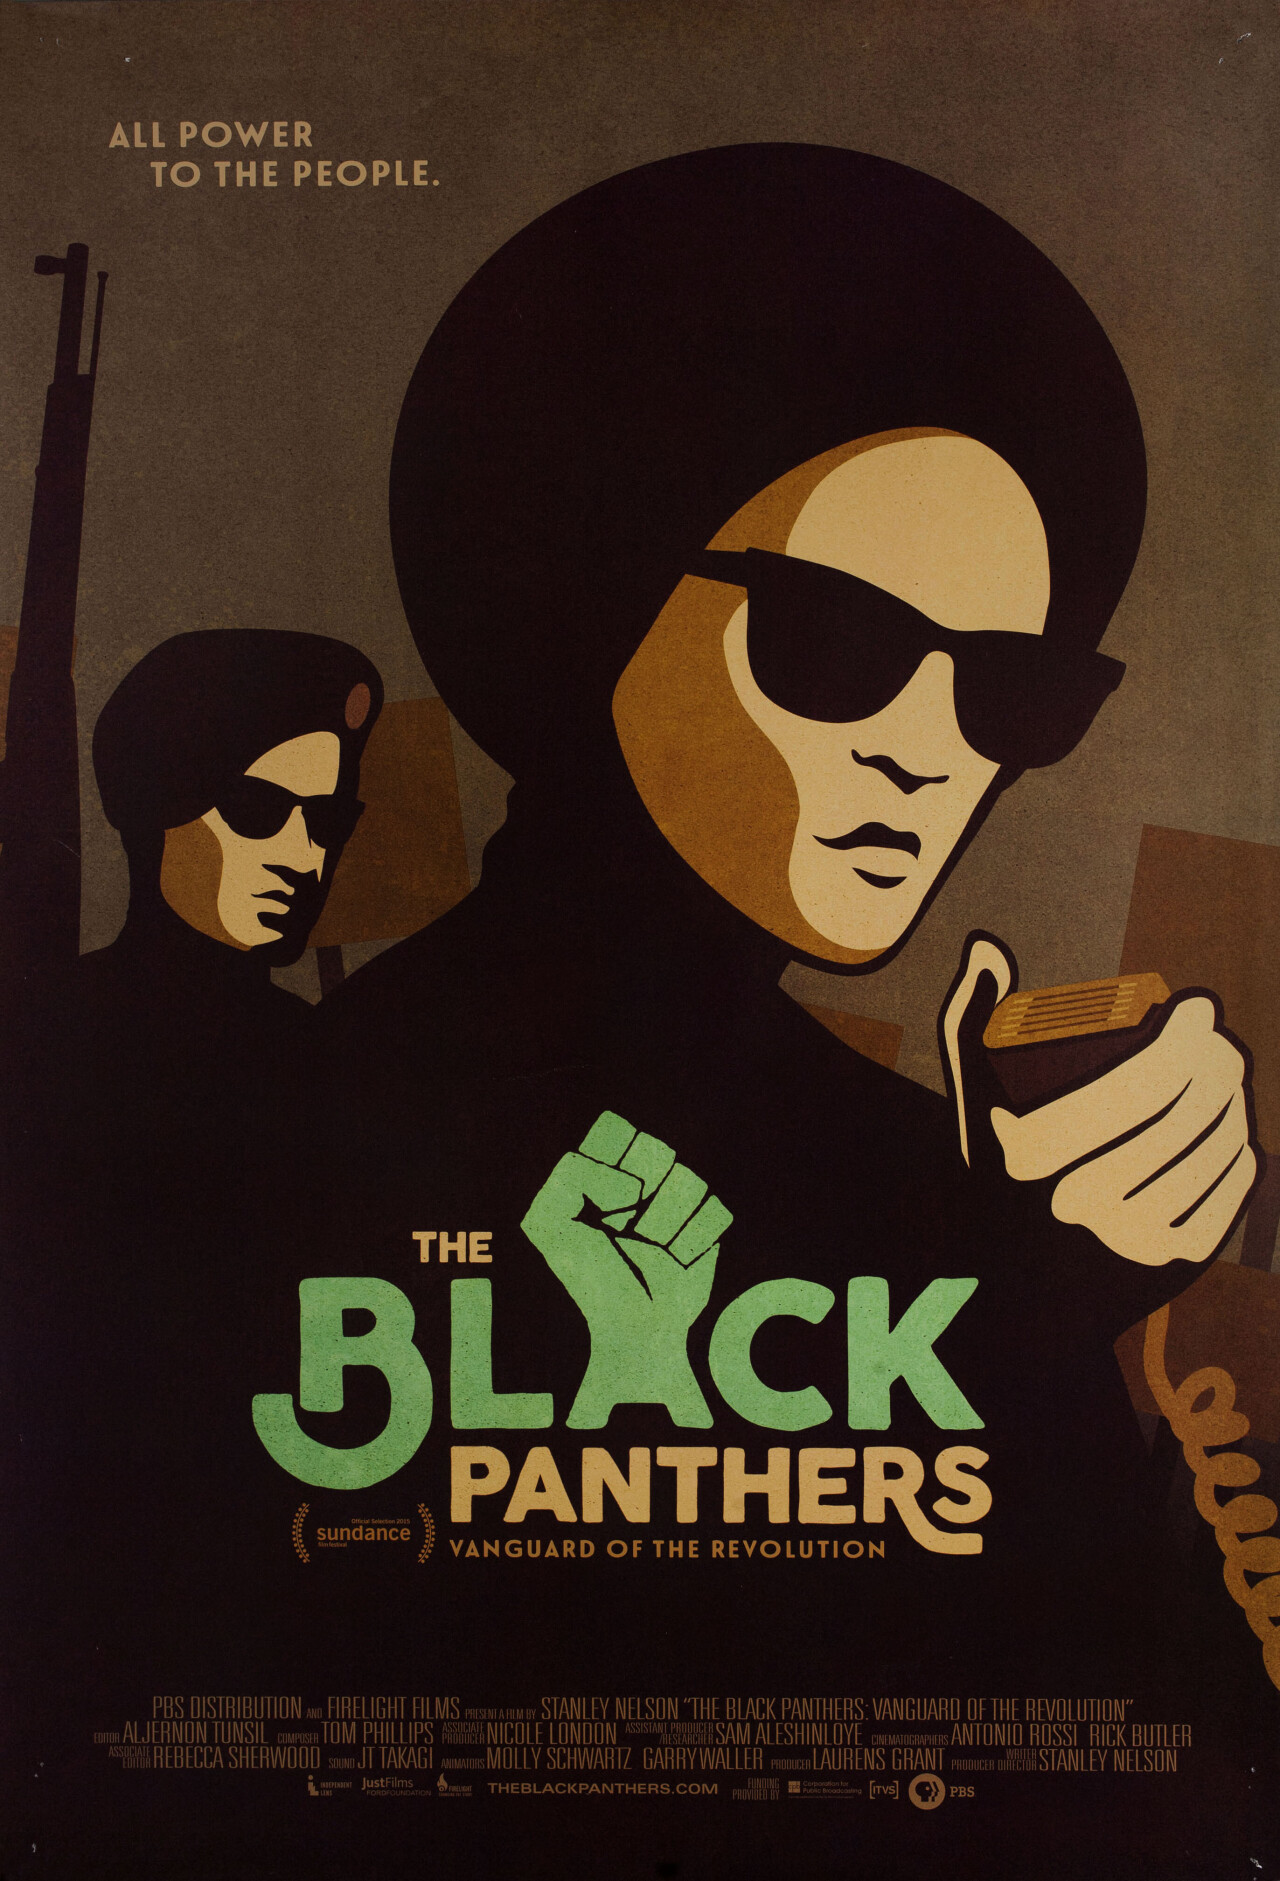 Черные пантеры: Передовой отряд революции (The Black Panthers Vanguard of the Revolution, 2015), режиссёр Стэнли Нельсон, американский постер к фильму (графический дизайн, 2015 год)